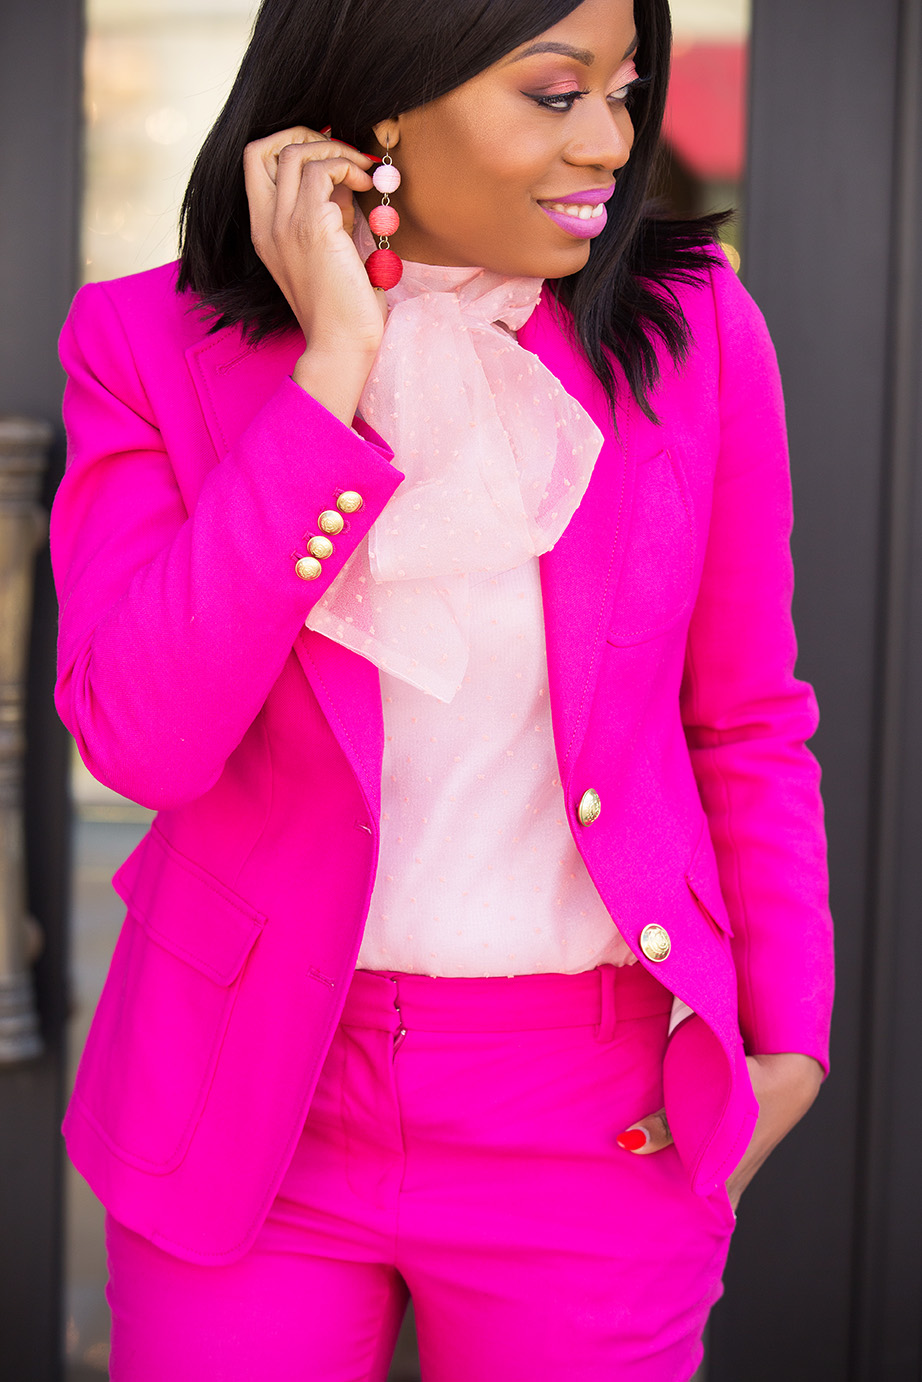 Bauble bar crispin drop earrings, JCrew pink suit, www.jadore-fashion.com